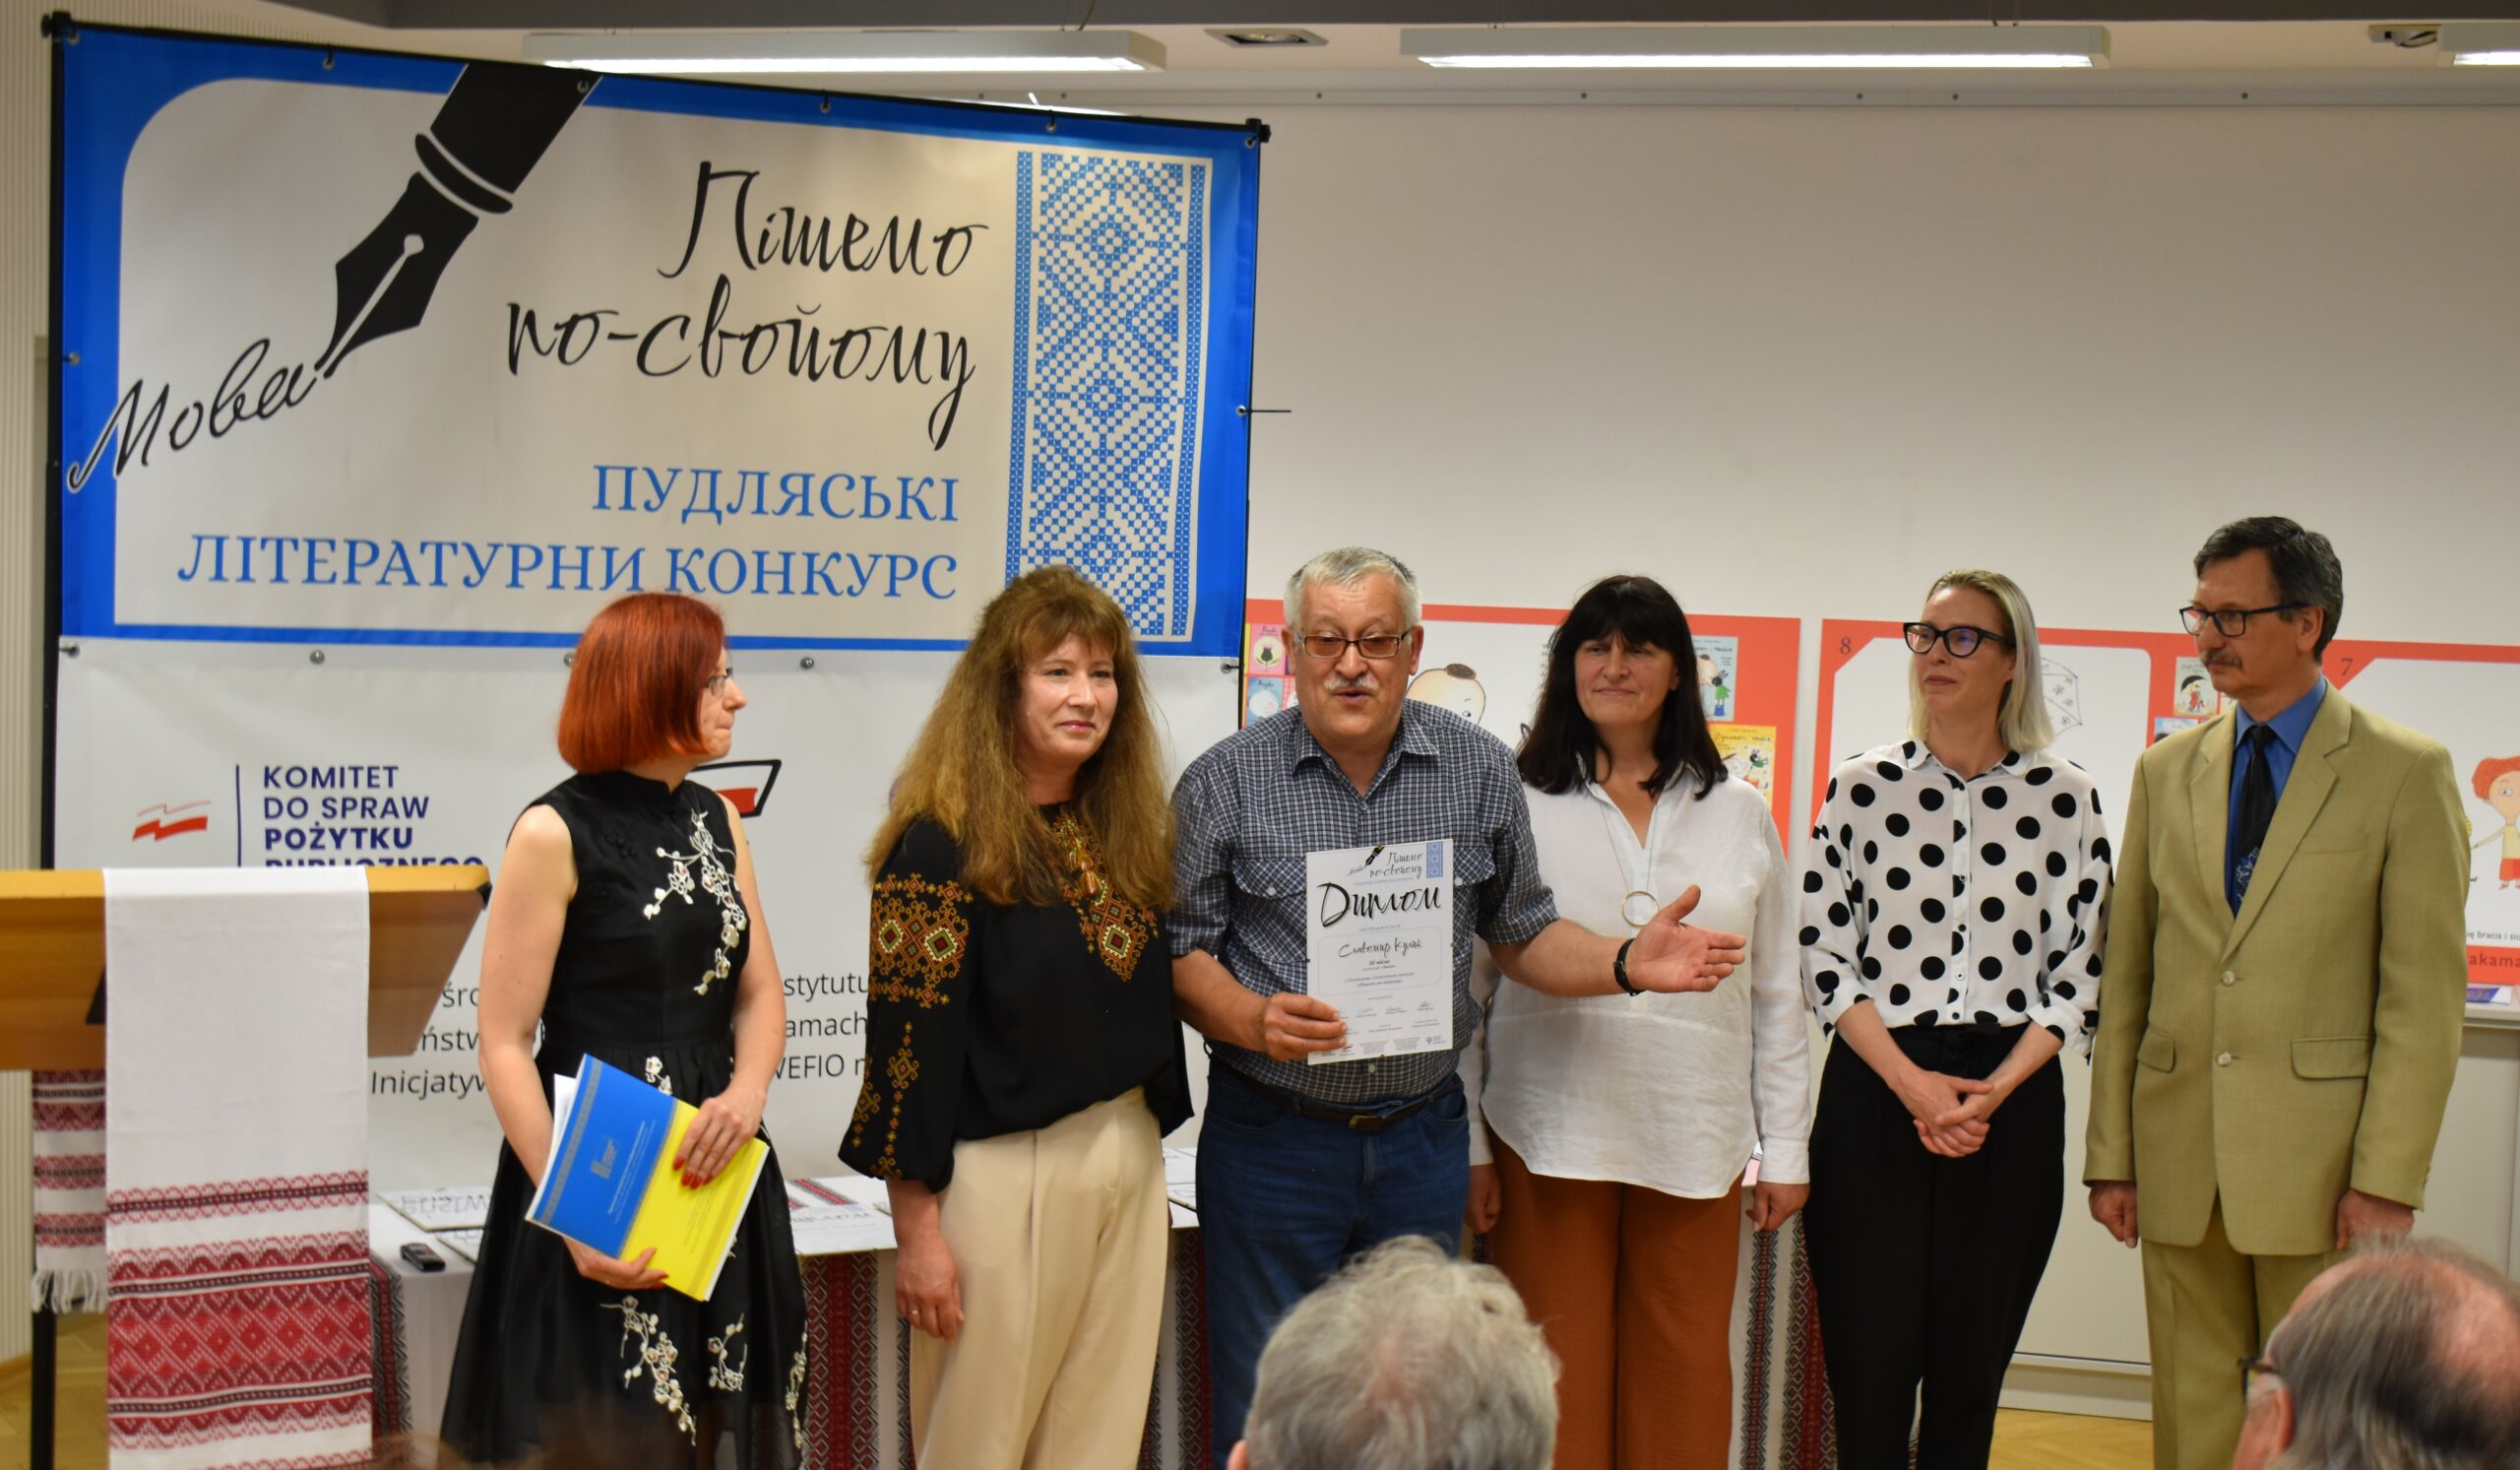 Publikacja utworu laureata konkursu „Piszemo po swojomu” – Sławomir Kulik, cykl wierszy